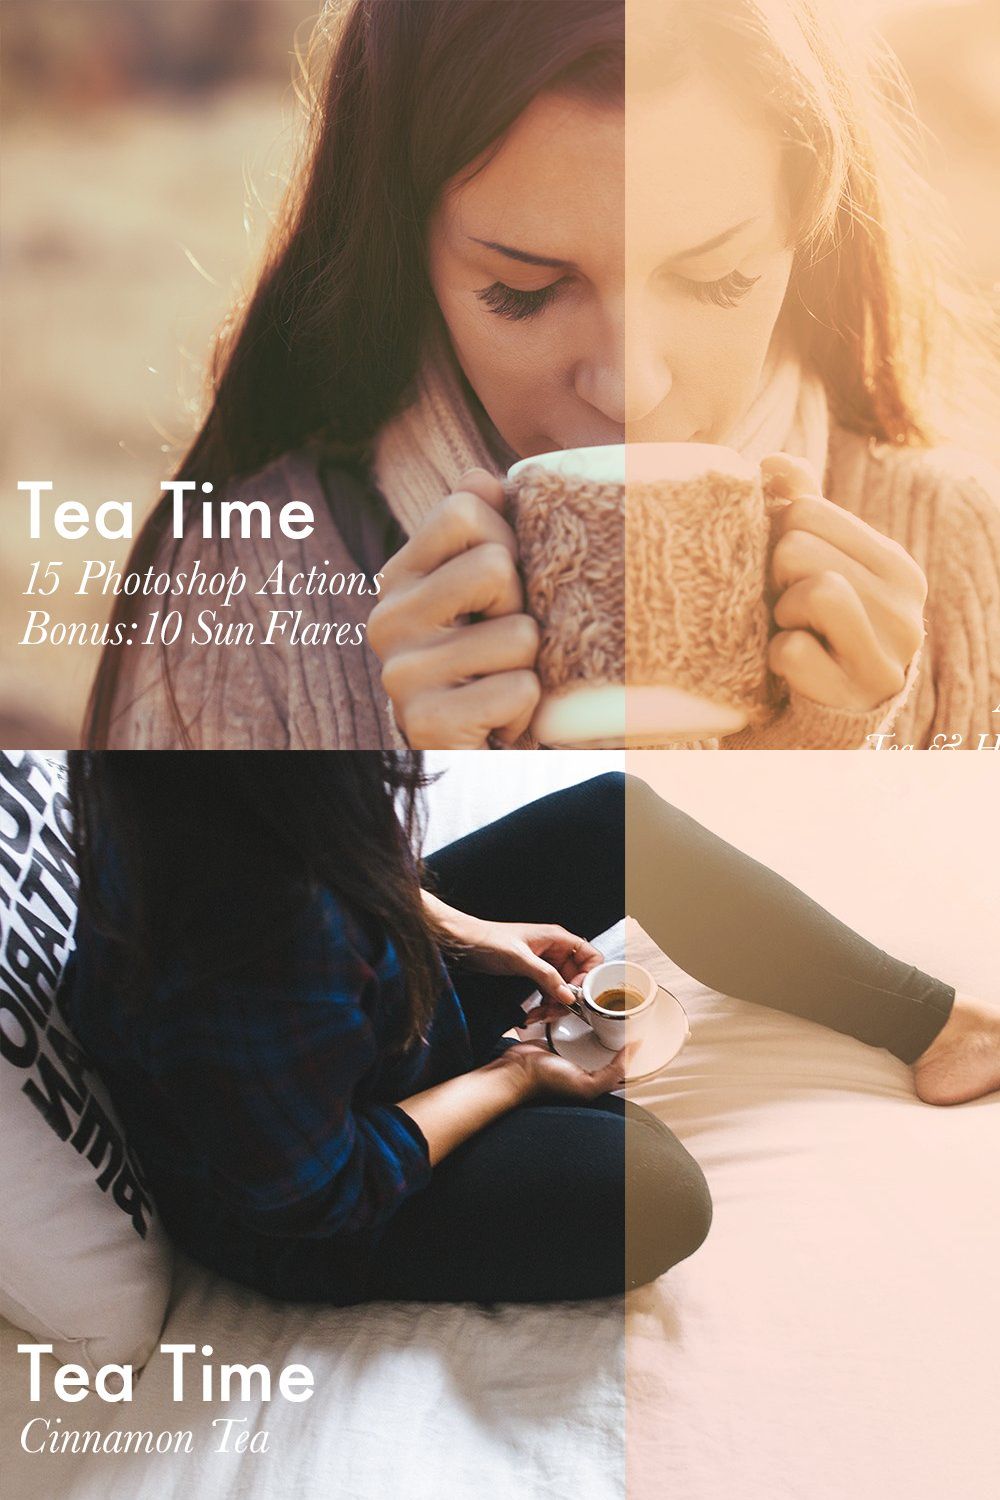 Tea Time-15 Photoshop Actions+Bonus pinterest preview image.